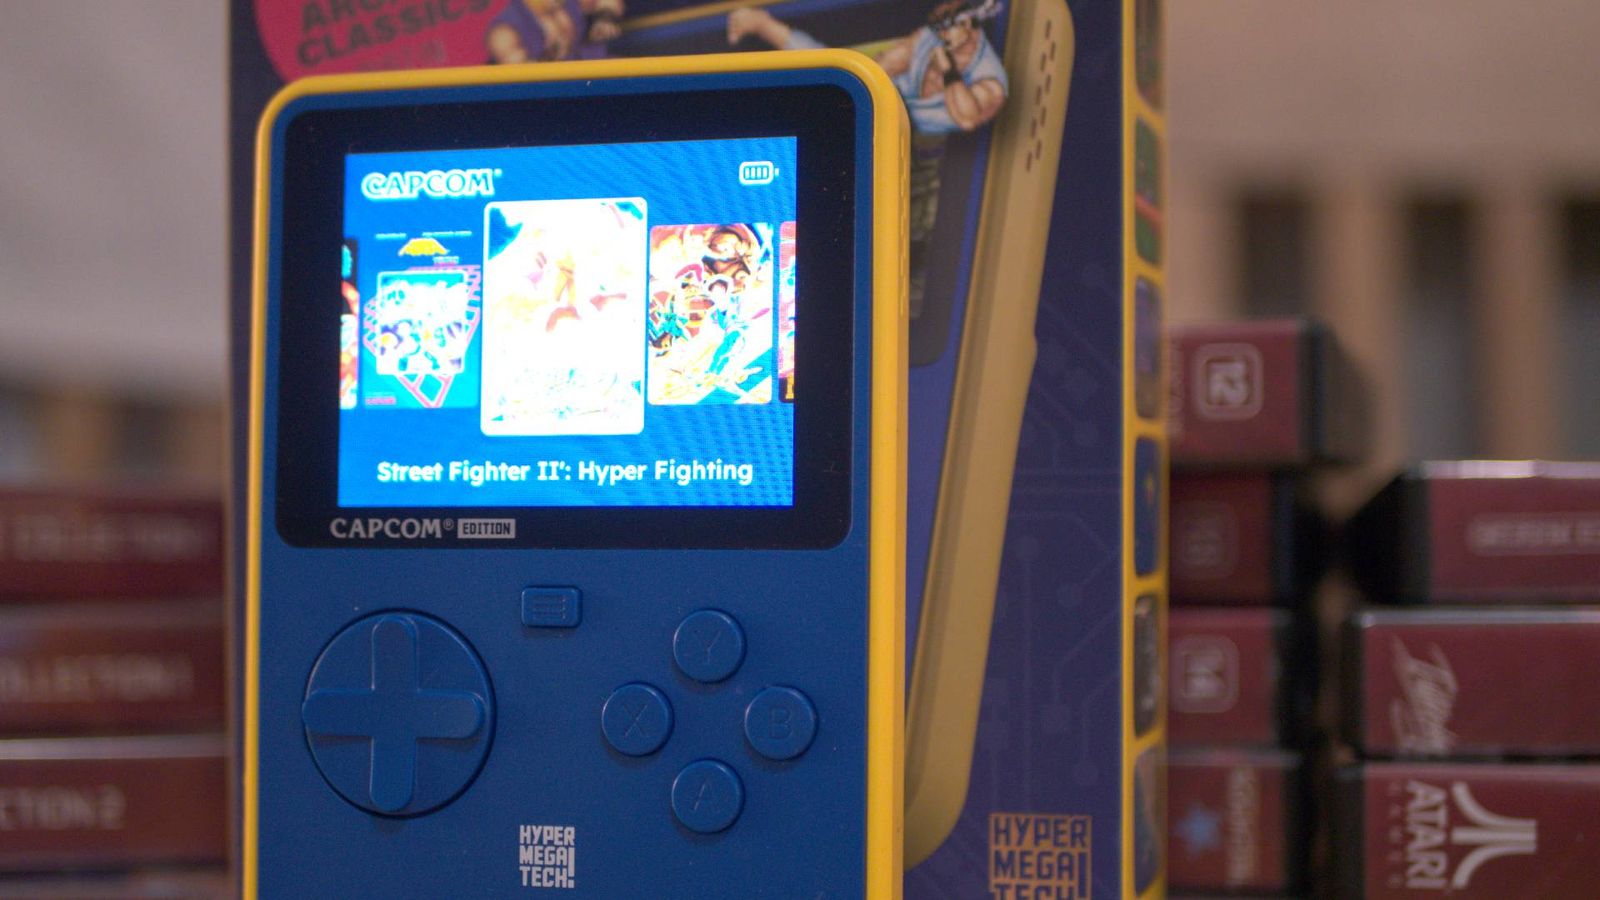 A HyperMegaTech Super Pocket Capcom Edition against a stack of evercade cases